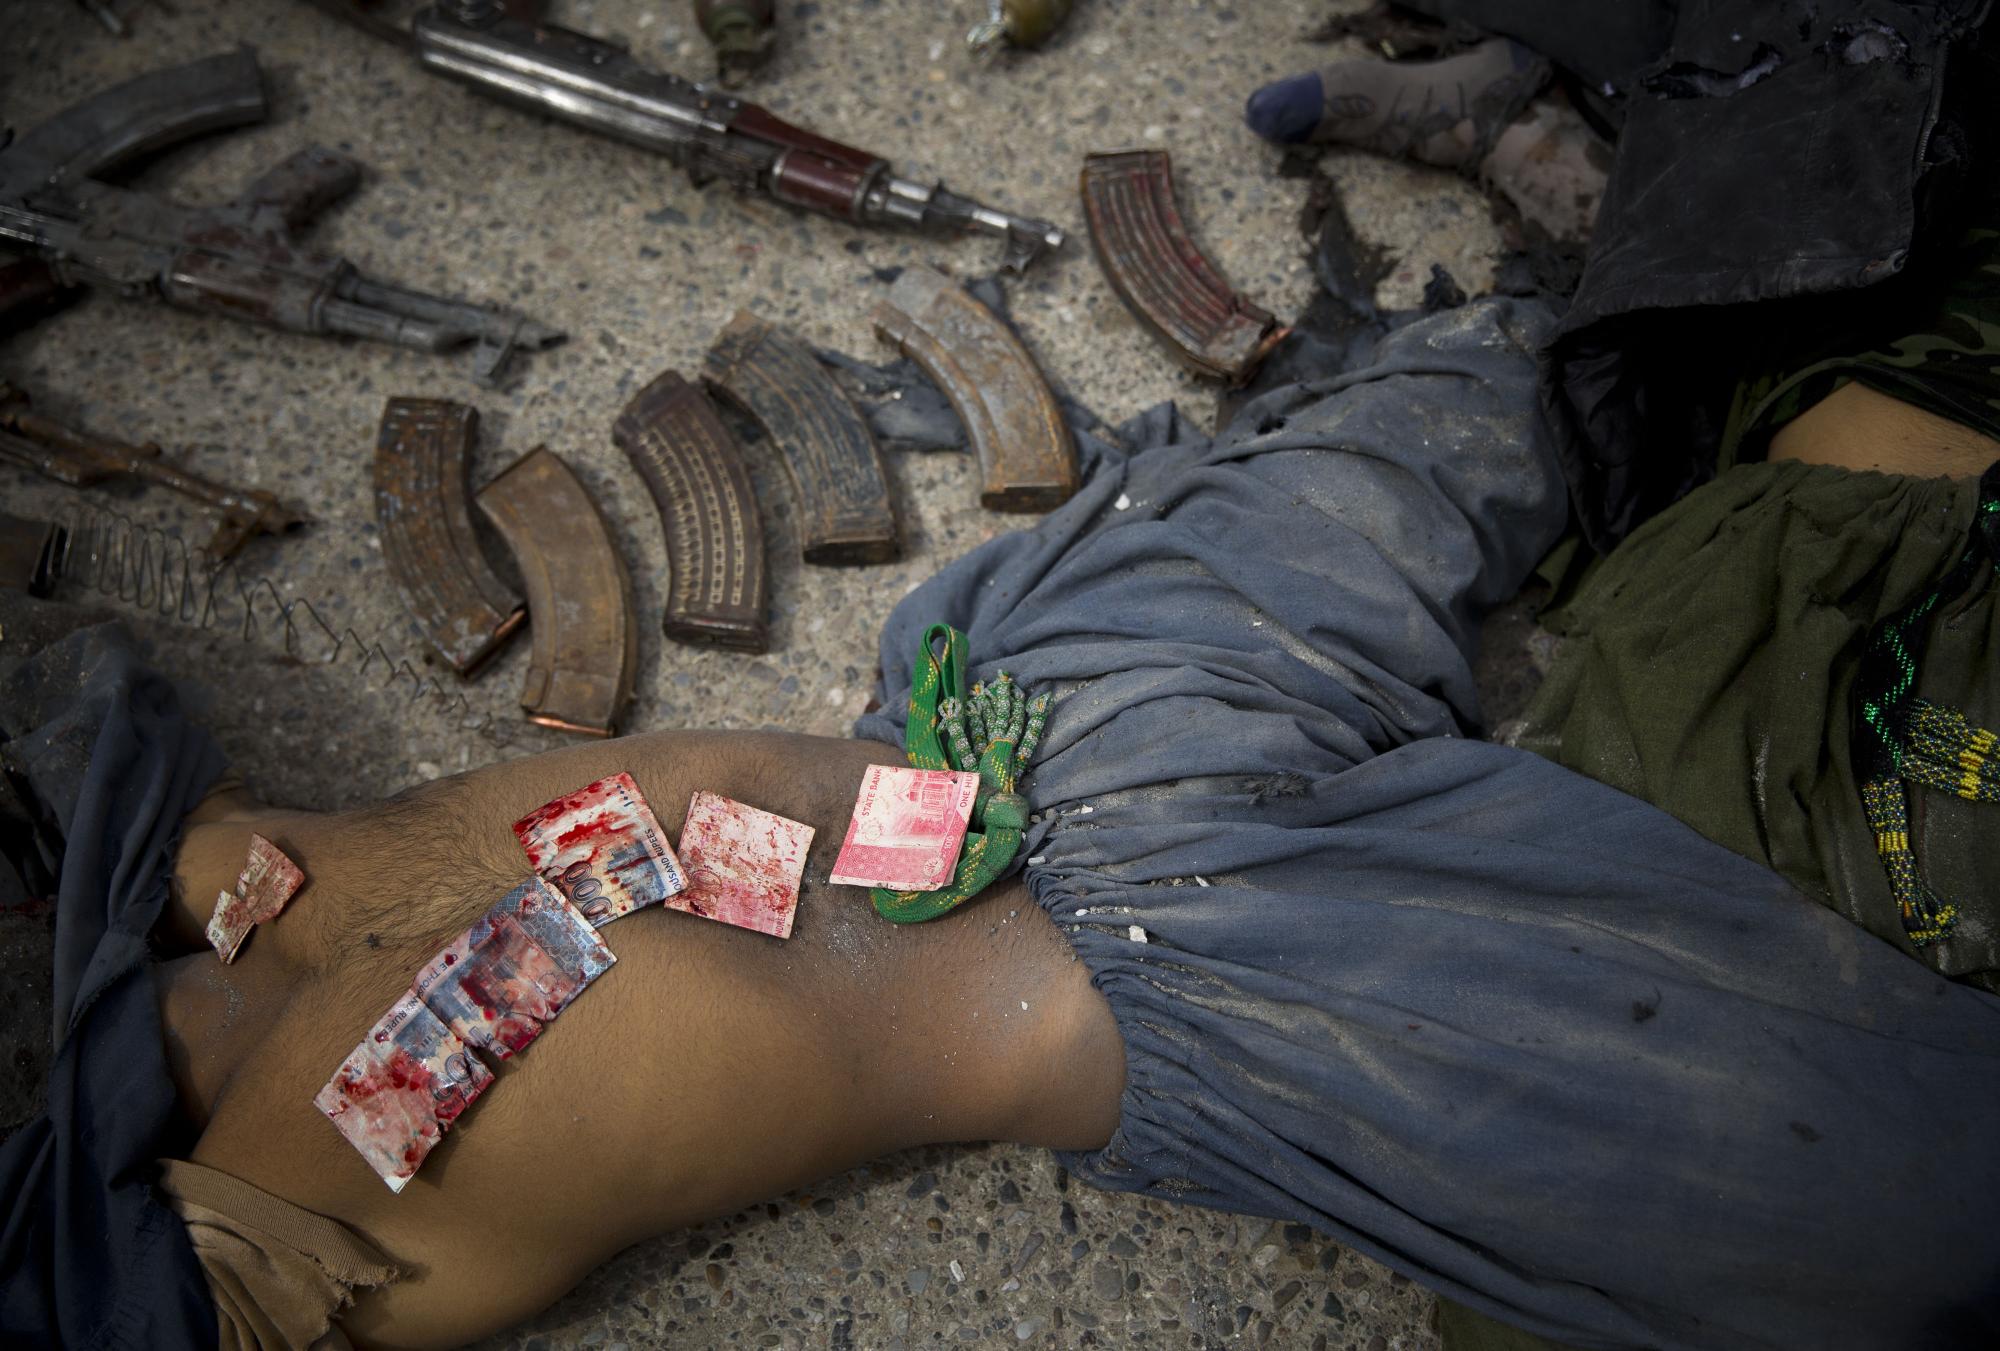 Los billetes de banco paquistaníes cubiertos de sangre se muestran en el cuerpo de un atacante suicida muerto después de que la policía los encontrara en su bolsillo en el centro de Kandahar, Afganistán, el miércoles 12 de marzo de 2014, luego de un ataque contra la antigua sede de inteligencia afgana. Funcionarios policiales dijeron que tres insurgentes que intentaron asaltar la antigua sede del servicio de inteligencia de Afganistán en el sur de Kandahar murieron en un tiroteo con las fuerzas de seguridad. (Foto AP / Anja Niedringhaus)